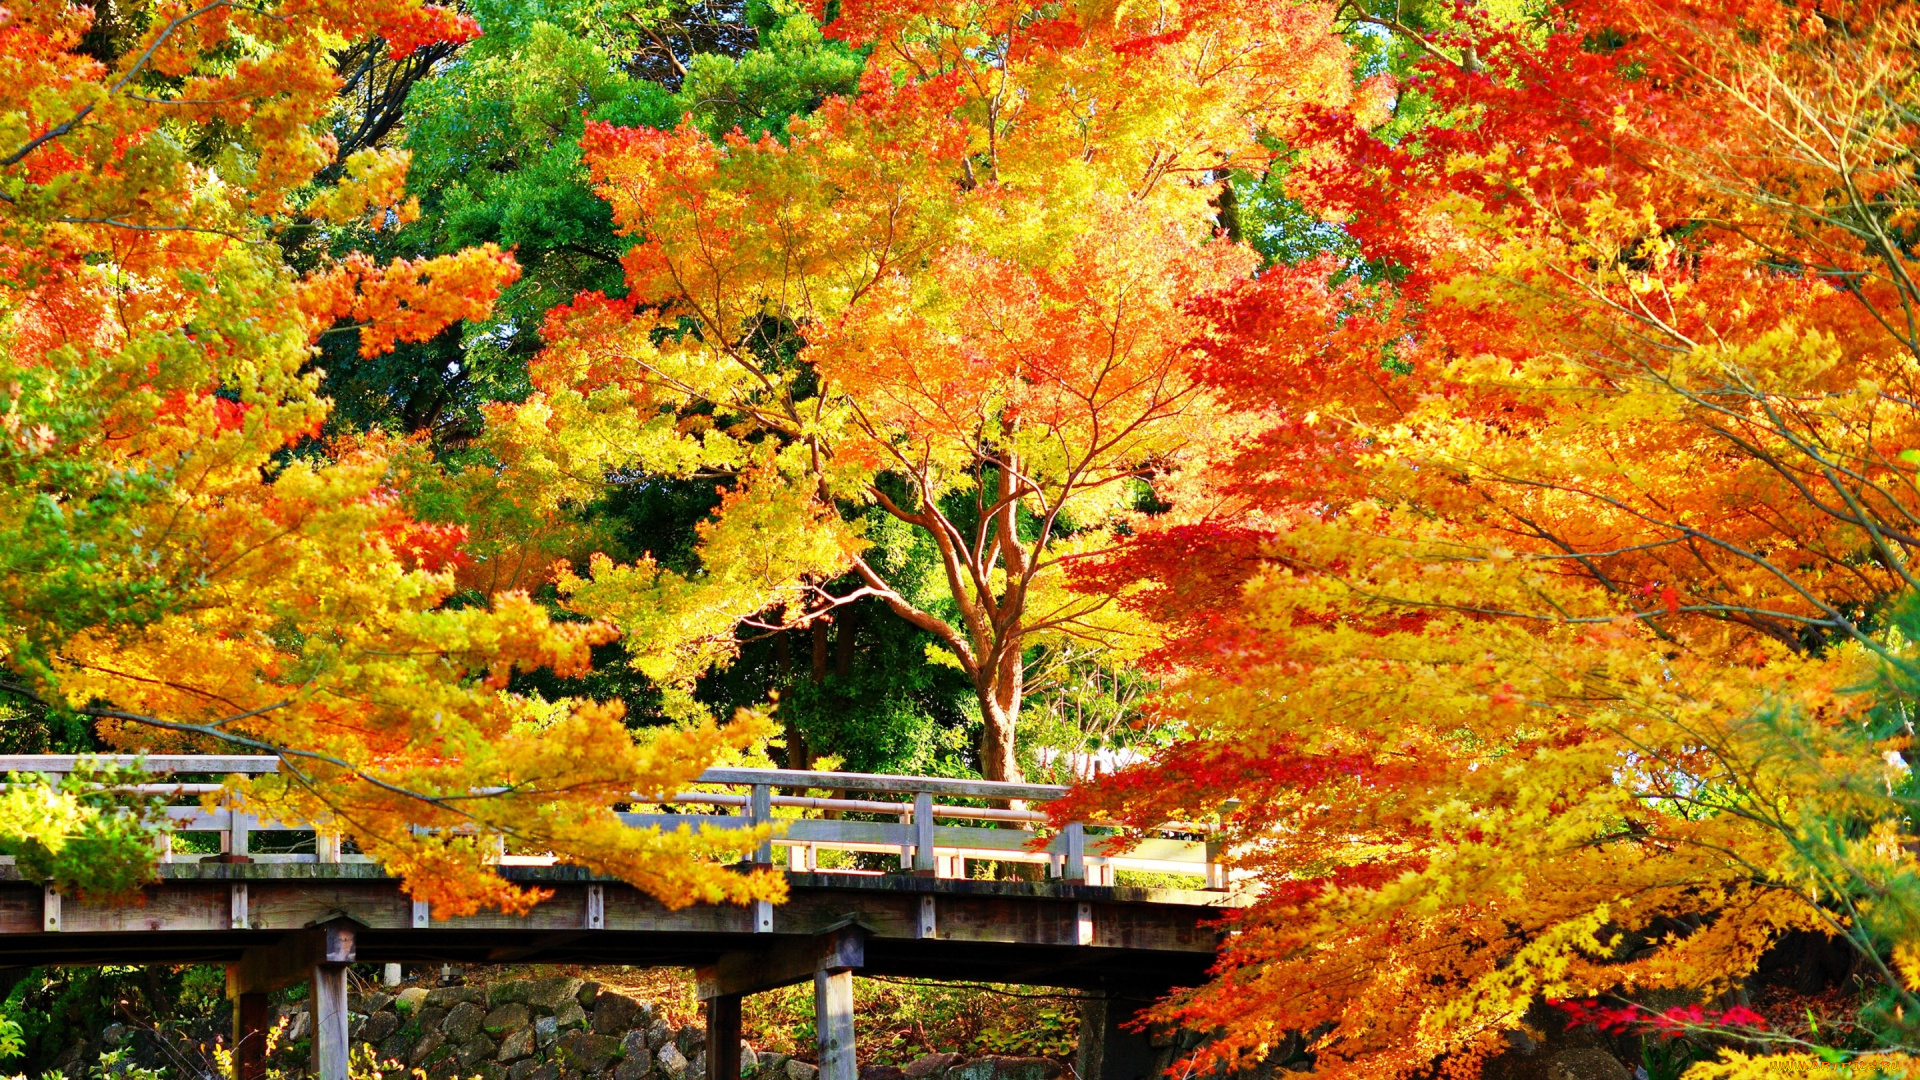 природа, парк, мост, золотистые, деревья, осень, камни, солнечно